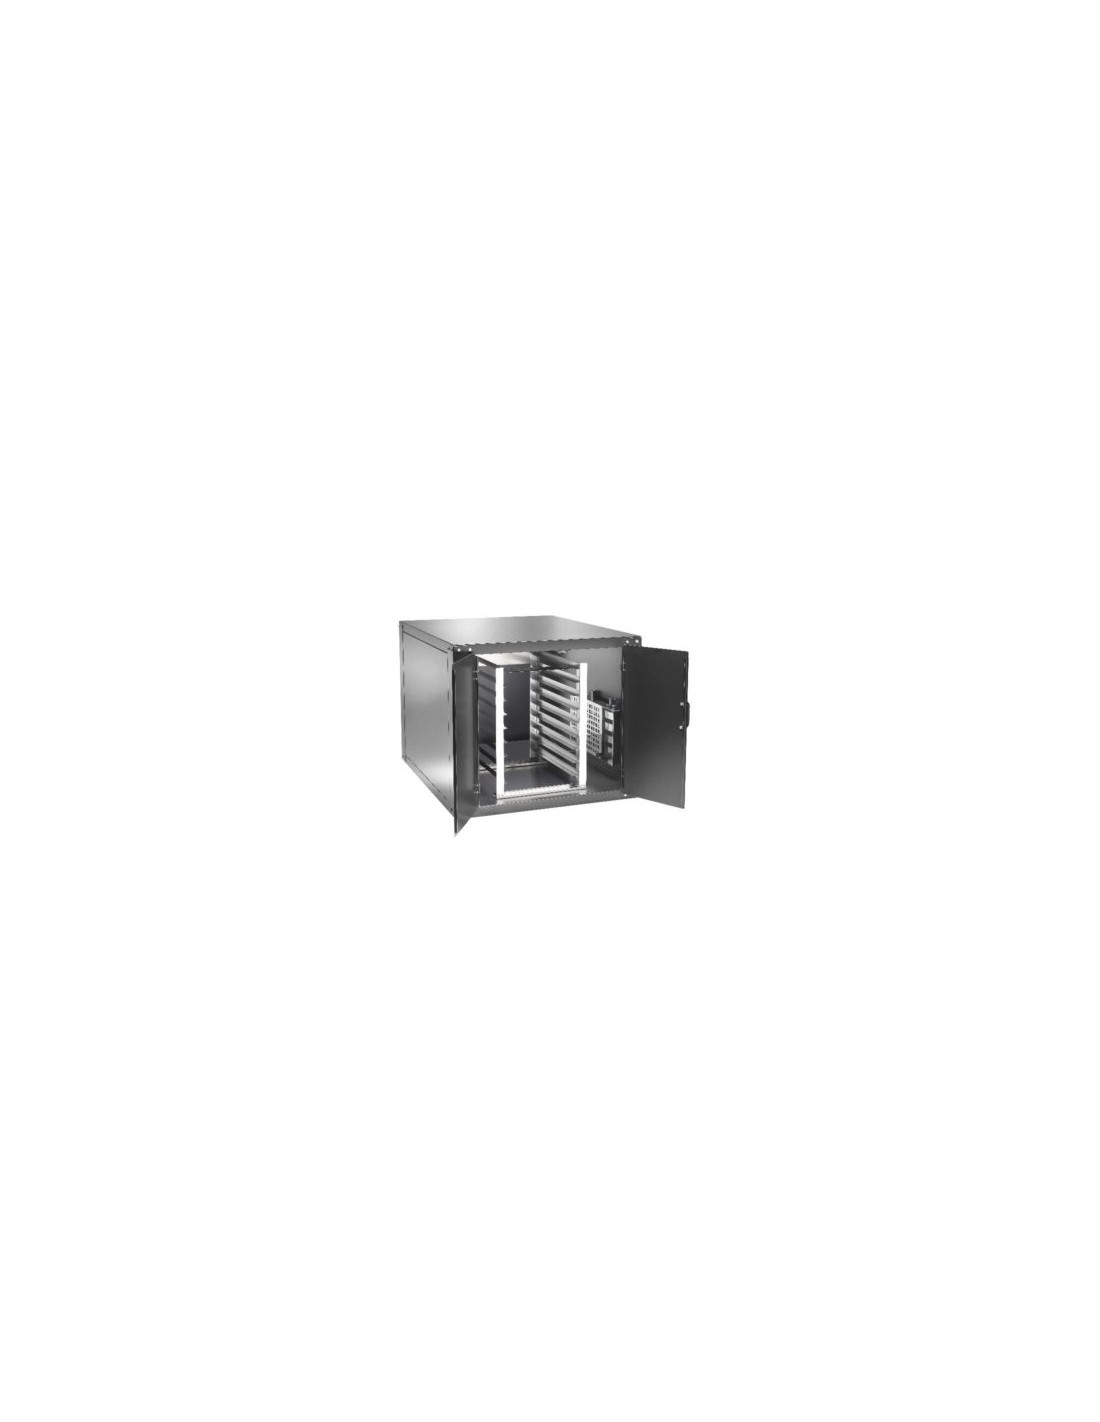 Cella lievitazione per forno mod. CLFMDW6 - Capacità  n. 9 teglie - Temperatura 0÷90°C - Potenza kW 1.1 - Alimentazione monofase